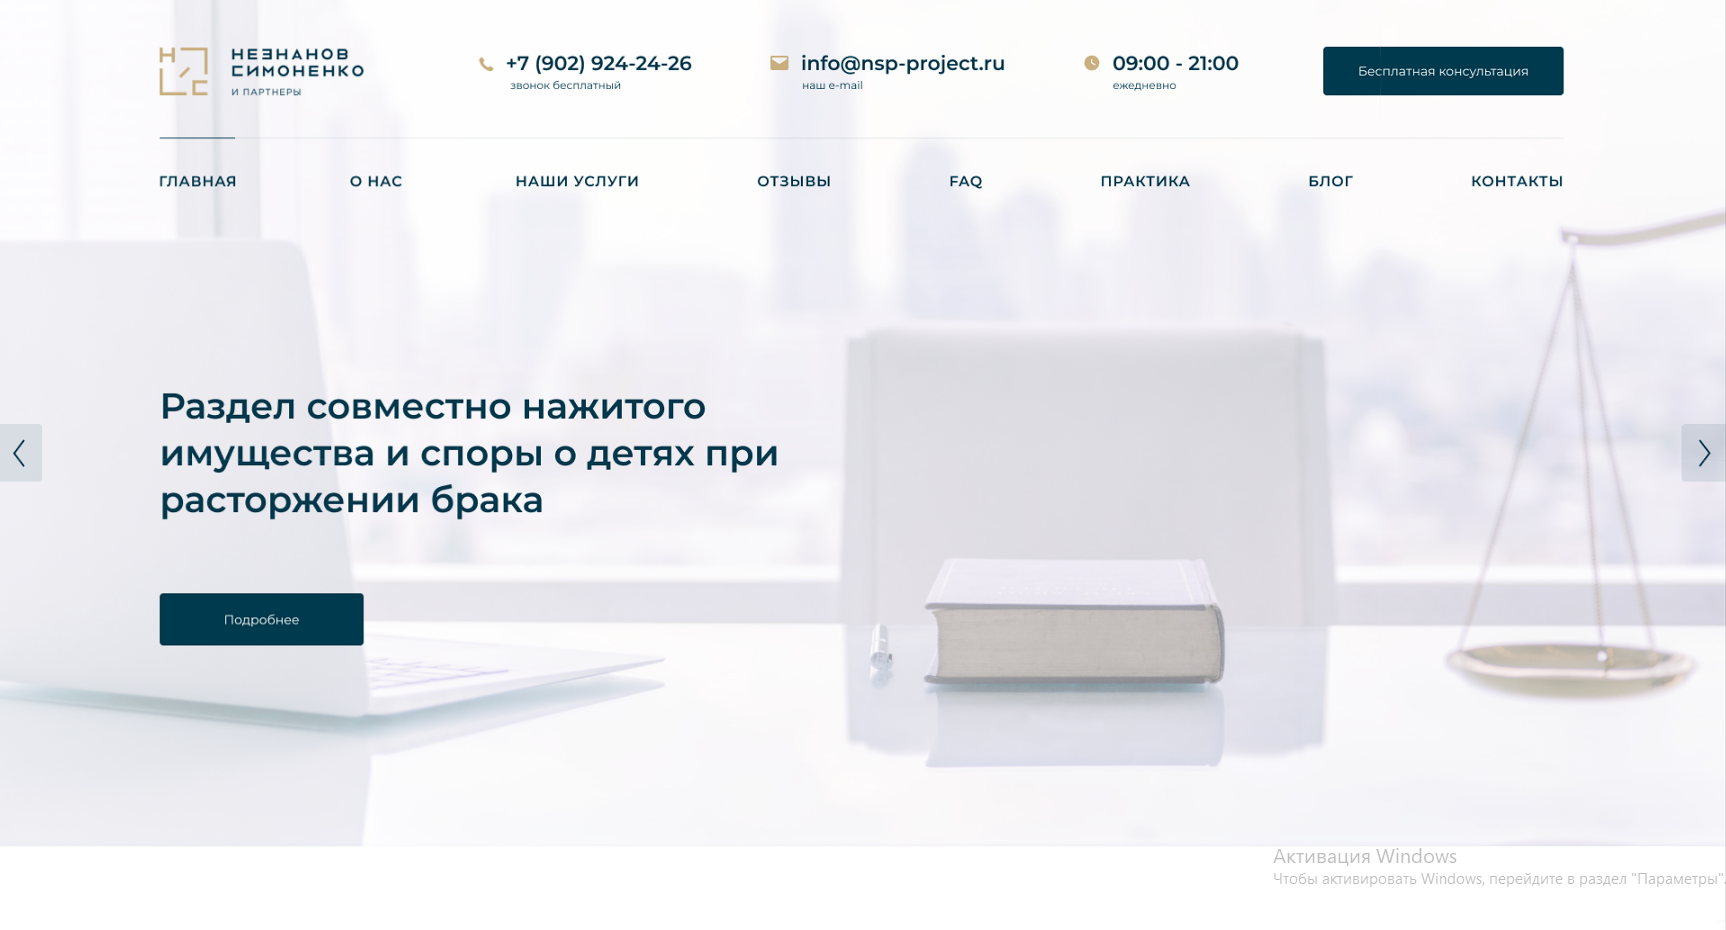 Создание сайта для компании «Незнанов Симоненко»